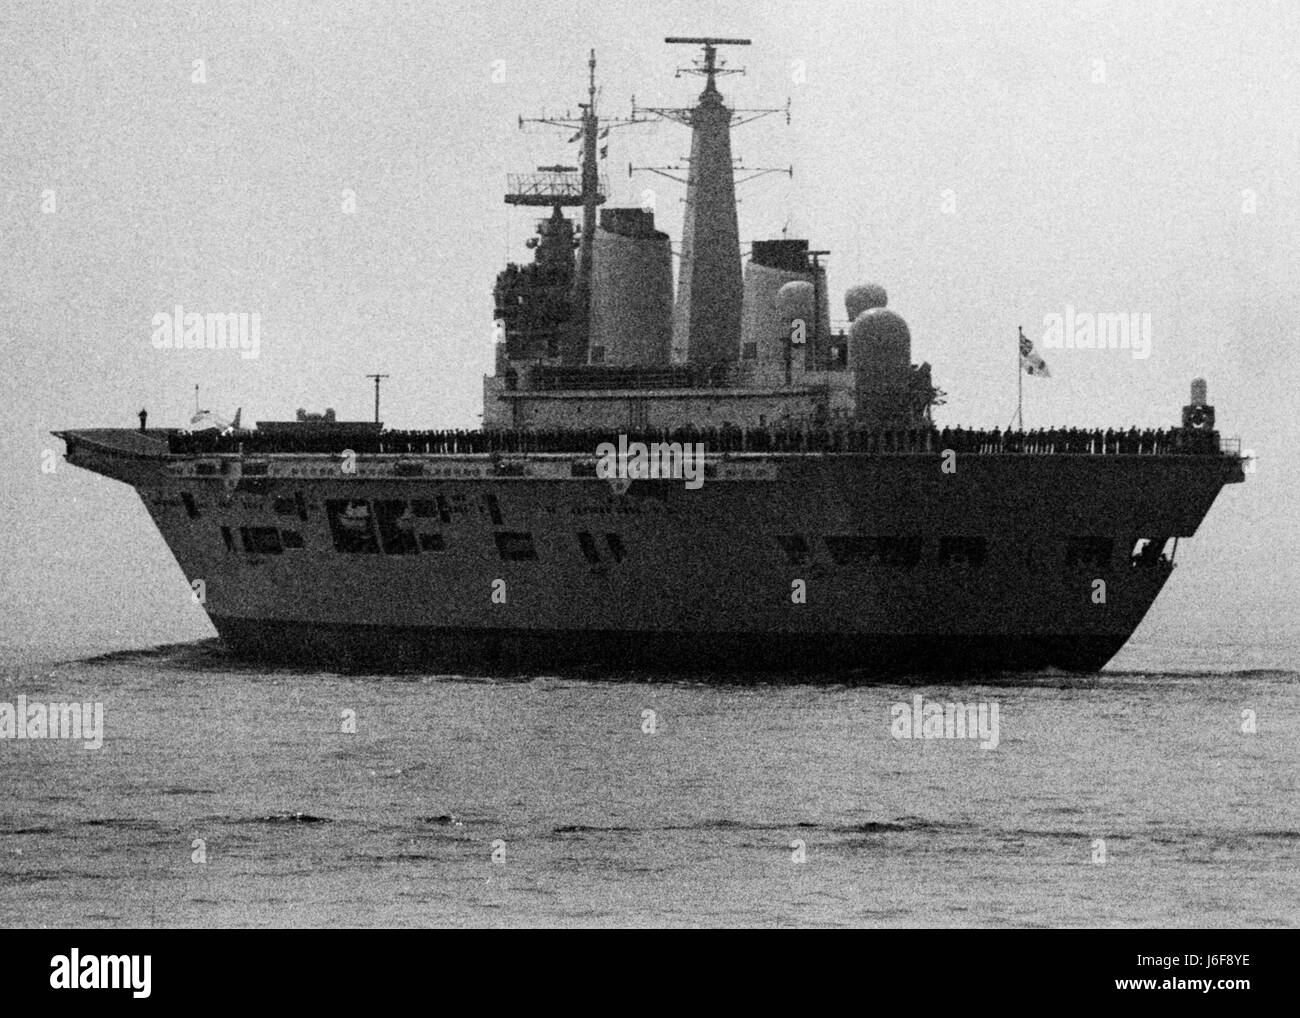 AJAXNETPHOTO. 1982. PORTSMOUTH, ANGLETERRE - départ des îles Falkland. Le HMS Illustrious VOILES DE L'ATLANTIQUE SUD PHOTO:JONATHAN EASTLAND/AJAX REF:820802 18 Banque D'Images